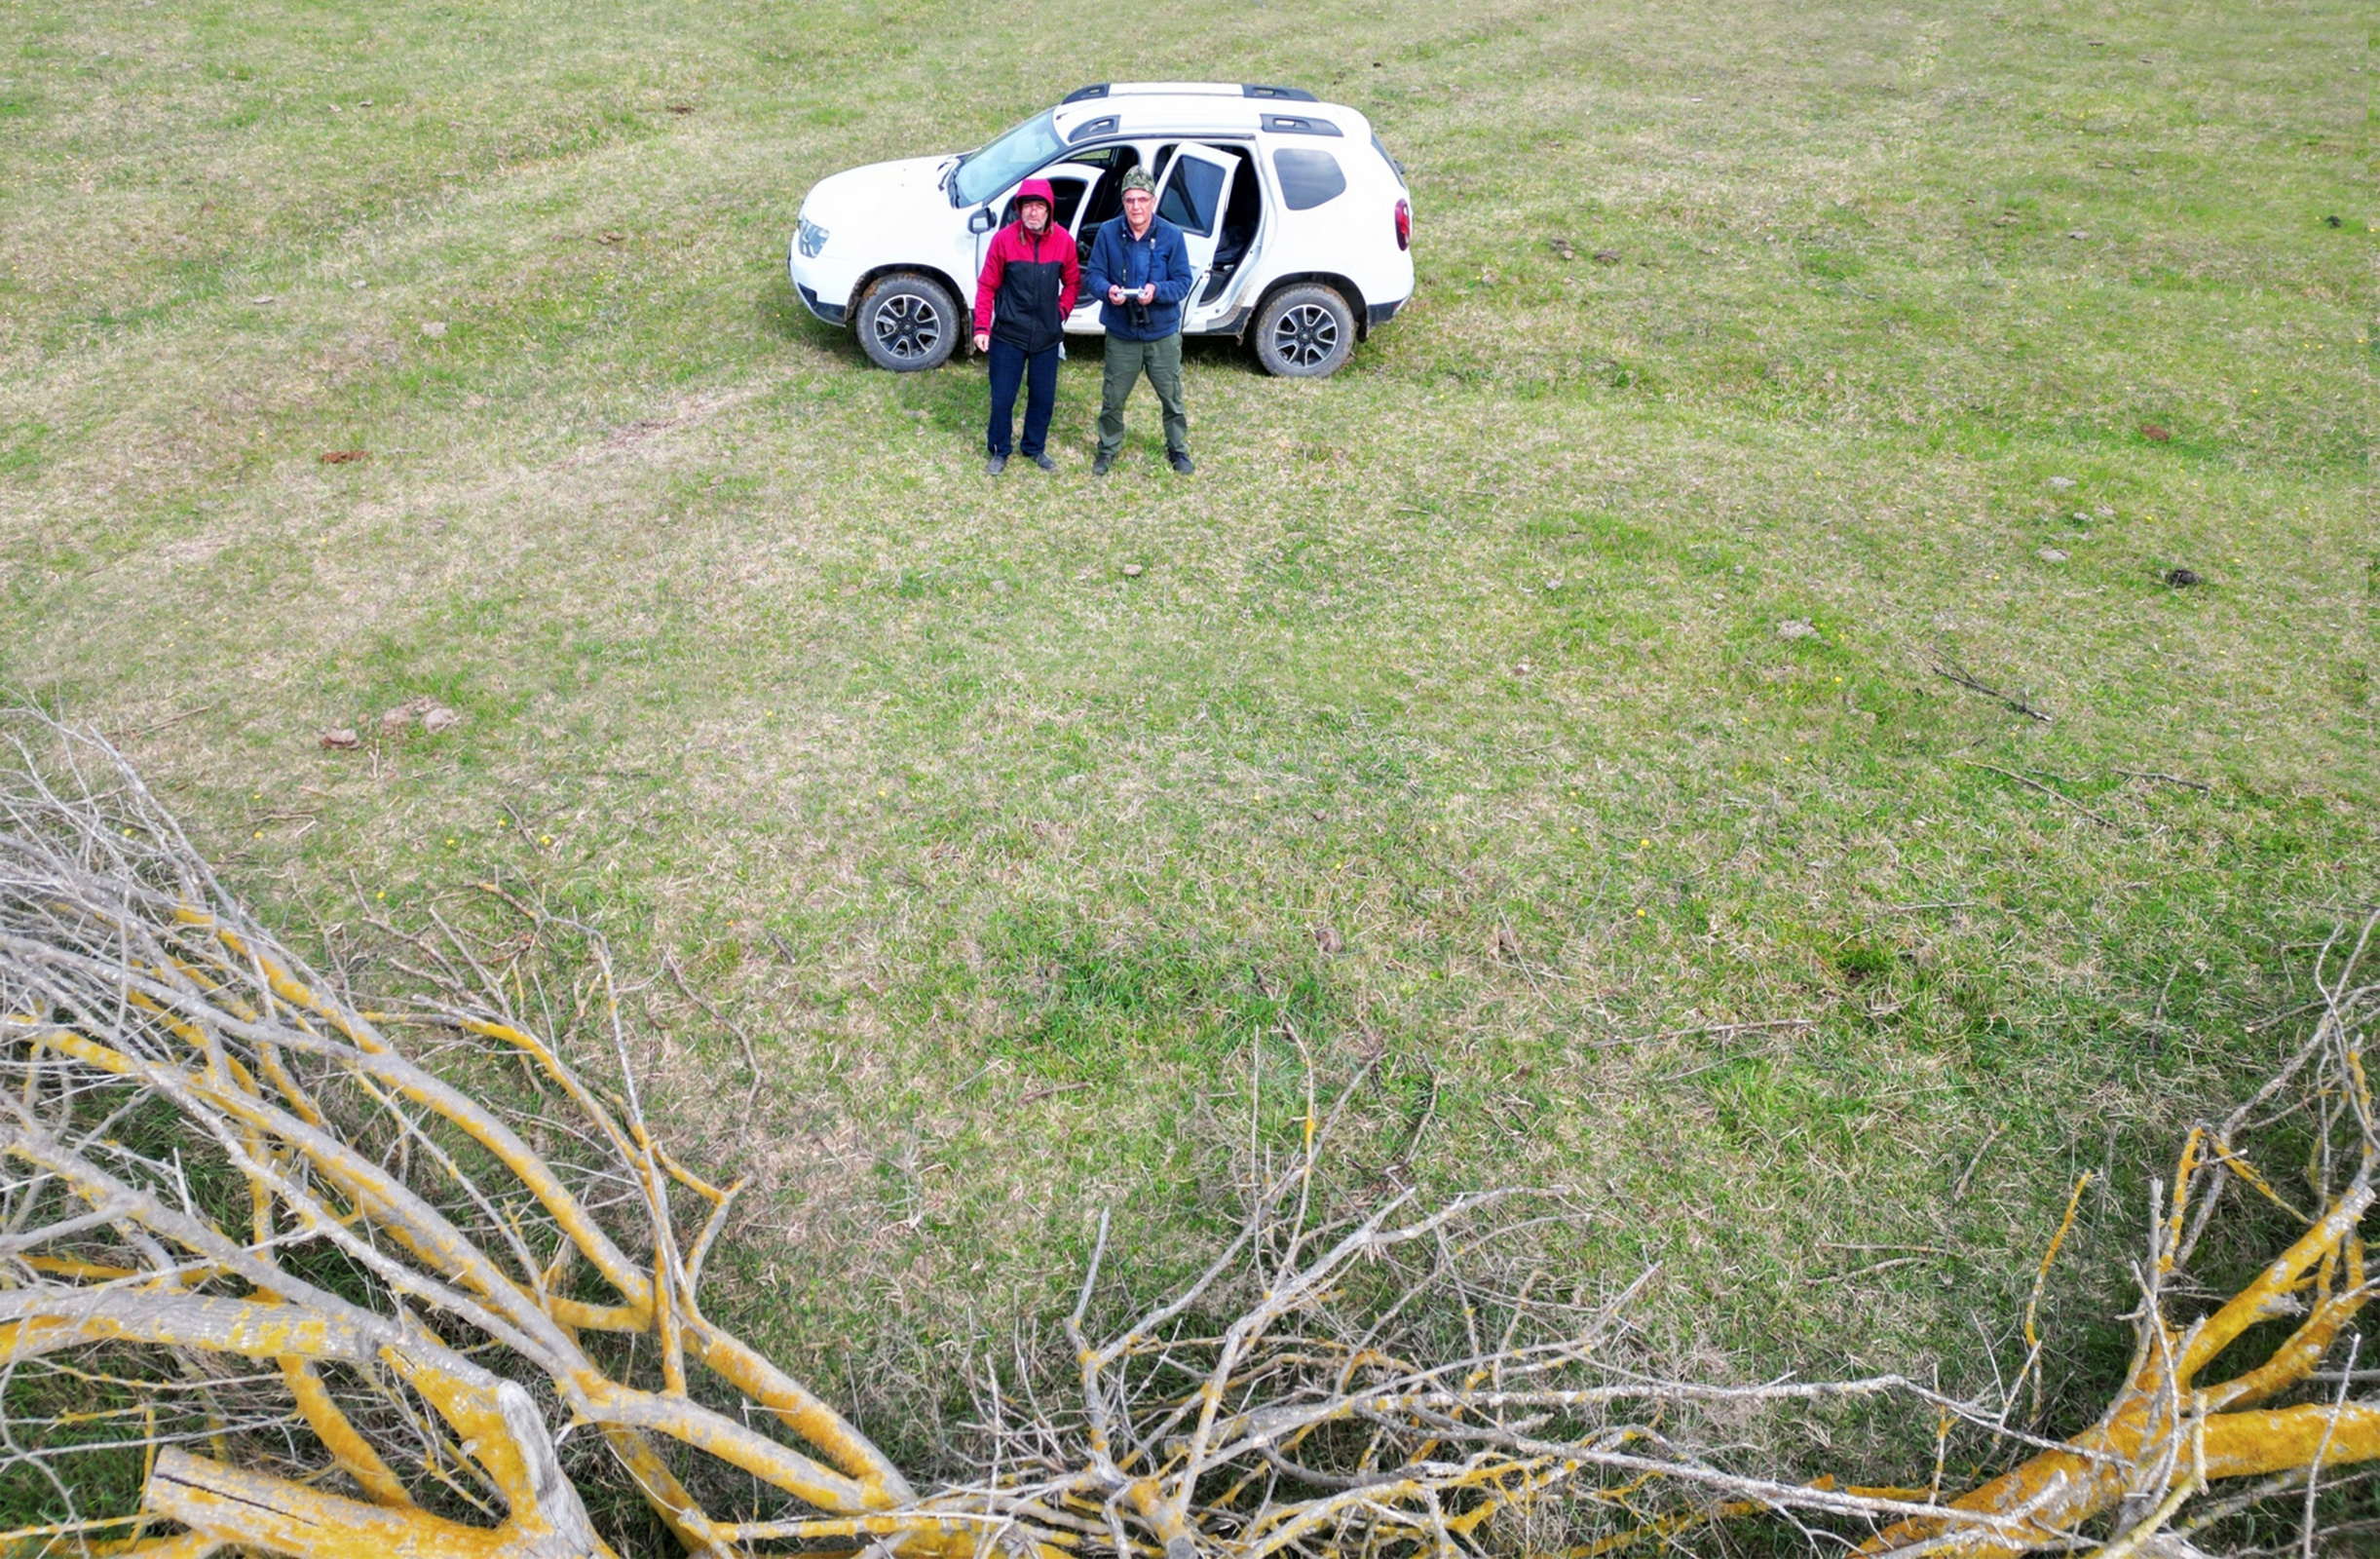 Гаджибек Джамирзоев с коллегой ведут обследование орлиного гнезда. Фото предоставлено Дагестанским заповедником